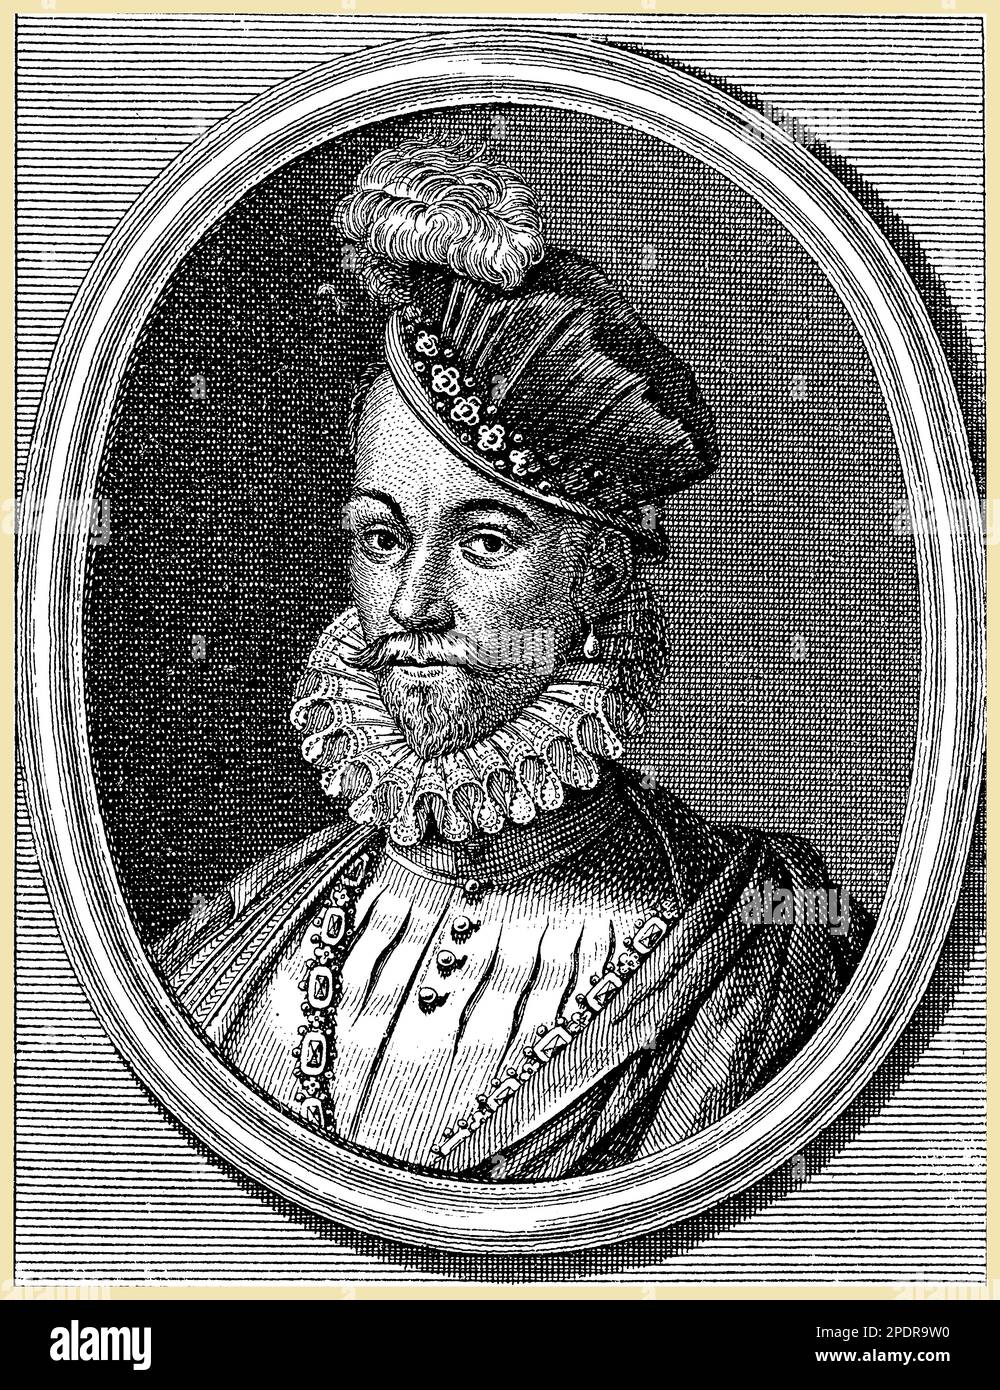 Charles IX de France (1550-1574) était le roi qui présidait le tristement célèbre Saint Massacre de Bartholomée de 1572, pendant les guerres de religion françaises. Il était également responsable de la suppression du protestantisme en France, mais son règne a été marqué par l'instabilité et la guerre civile. Charles IX est connu pour son intérêt pour les arts et les sciences, et pour son patronage des universitaires et des artistes. Son règne a vu la montée de la puissante famille guise, qui a contribué à façonner le cours des guerres de religion Banque D'Images